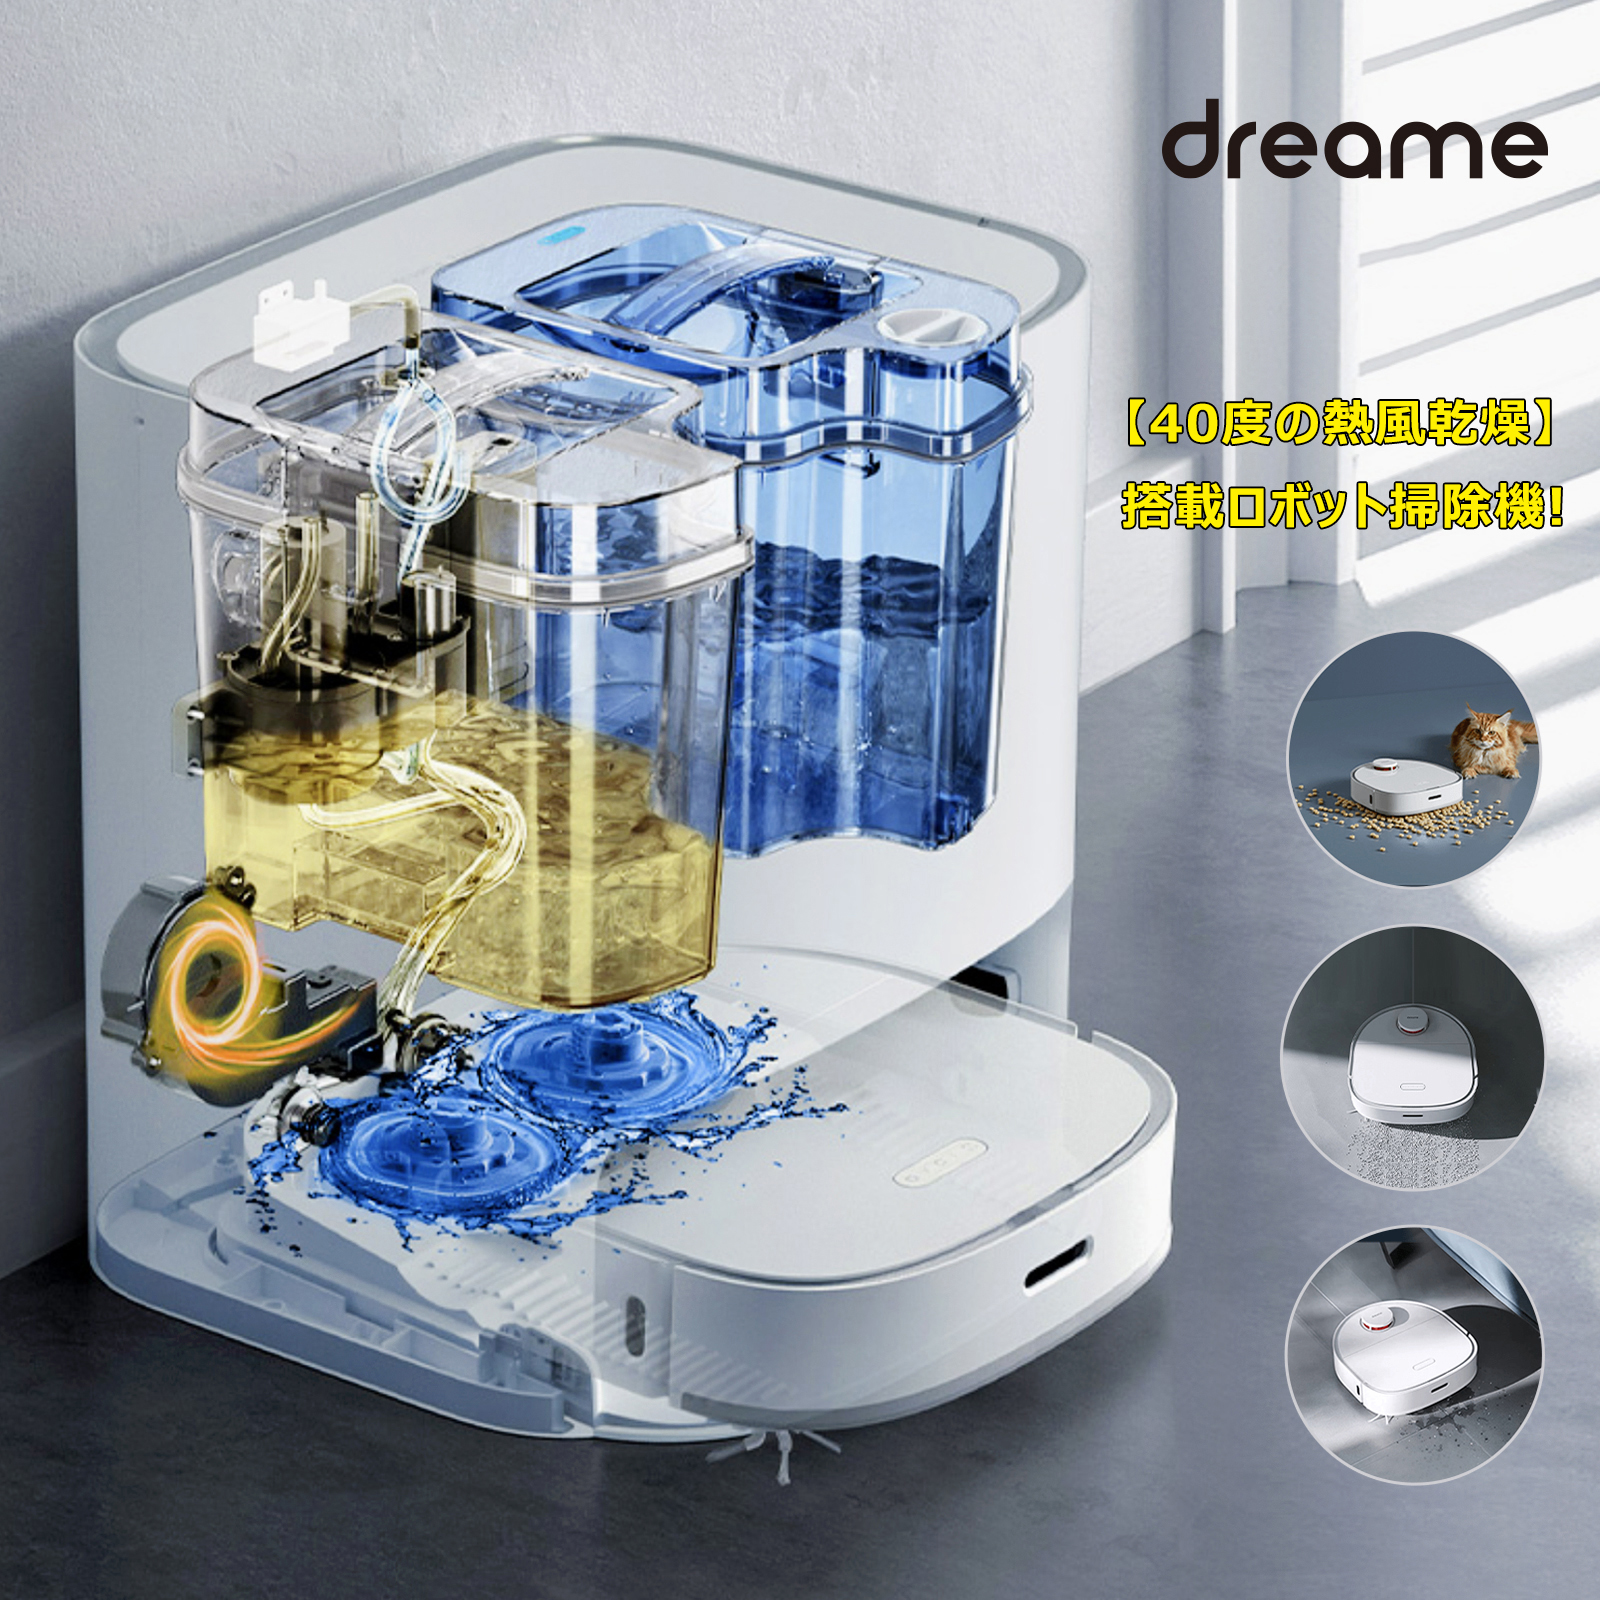 DreamD9 ロボット掃除 水拭きモジュール 単品 - 掃除機